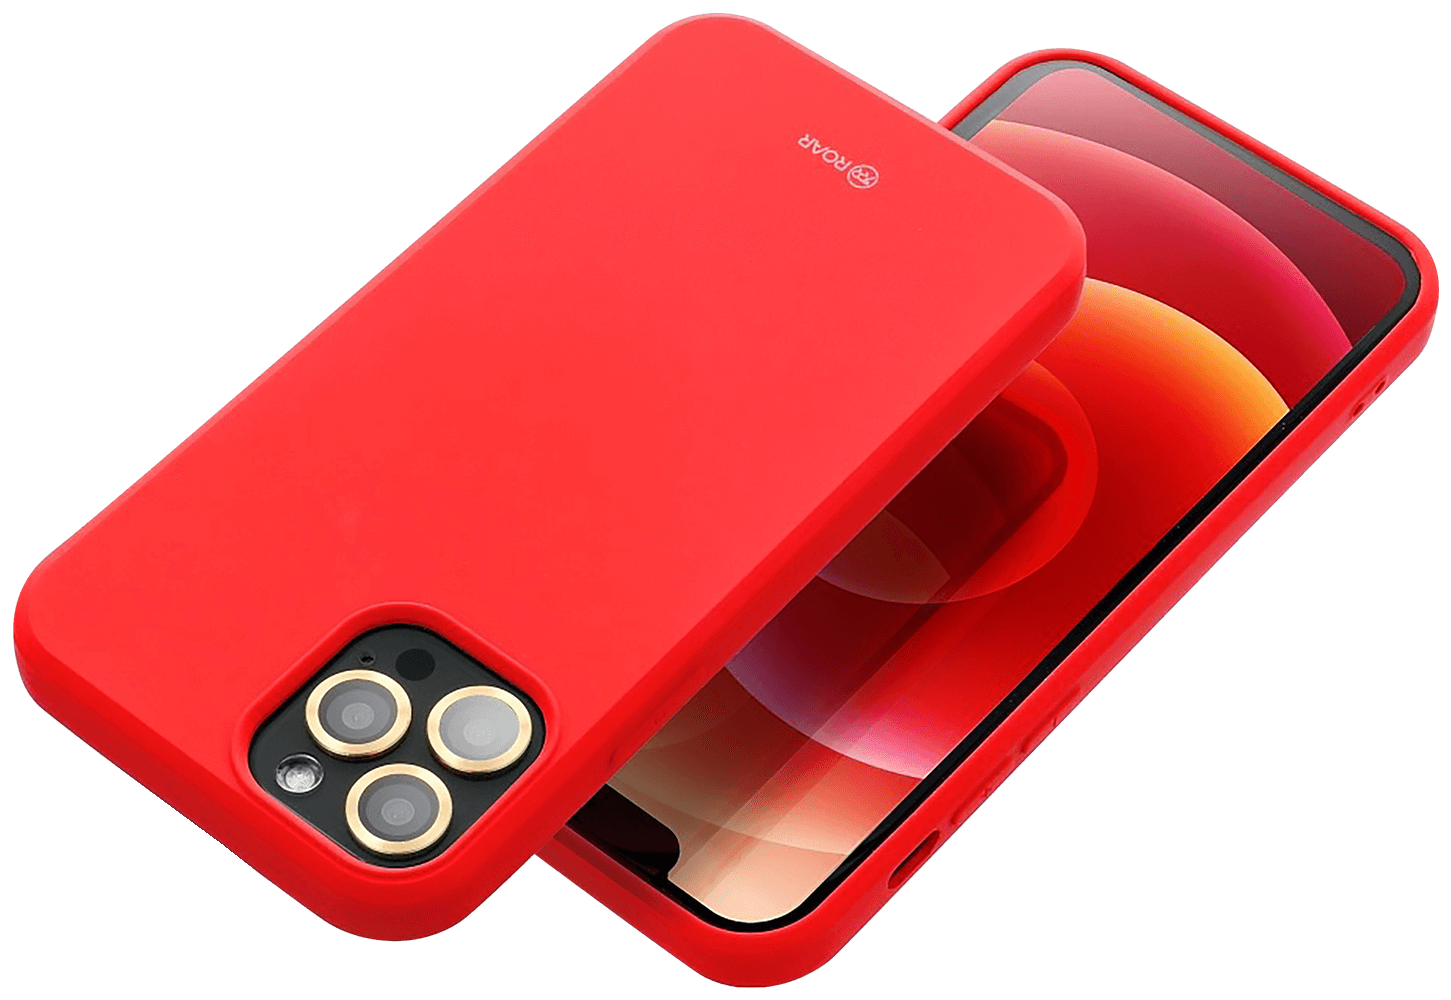 Apple iPhone 15 Pro szilikon tok gyári ROAR piros